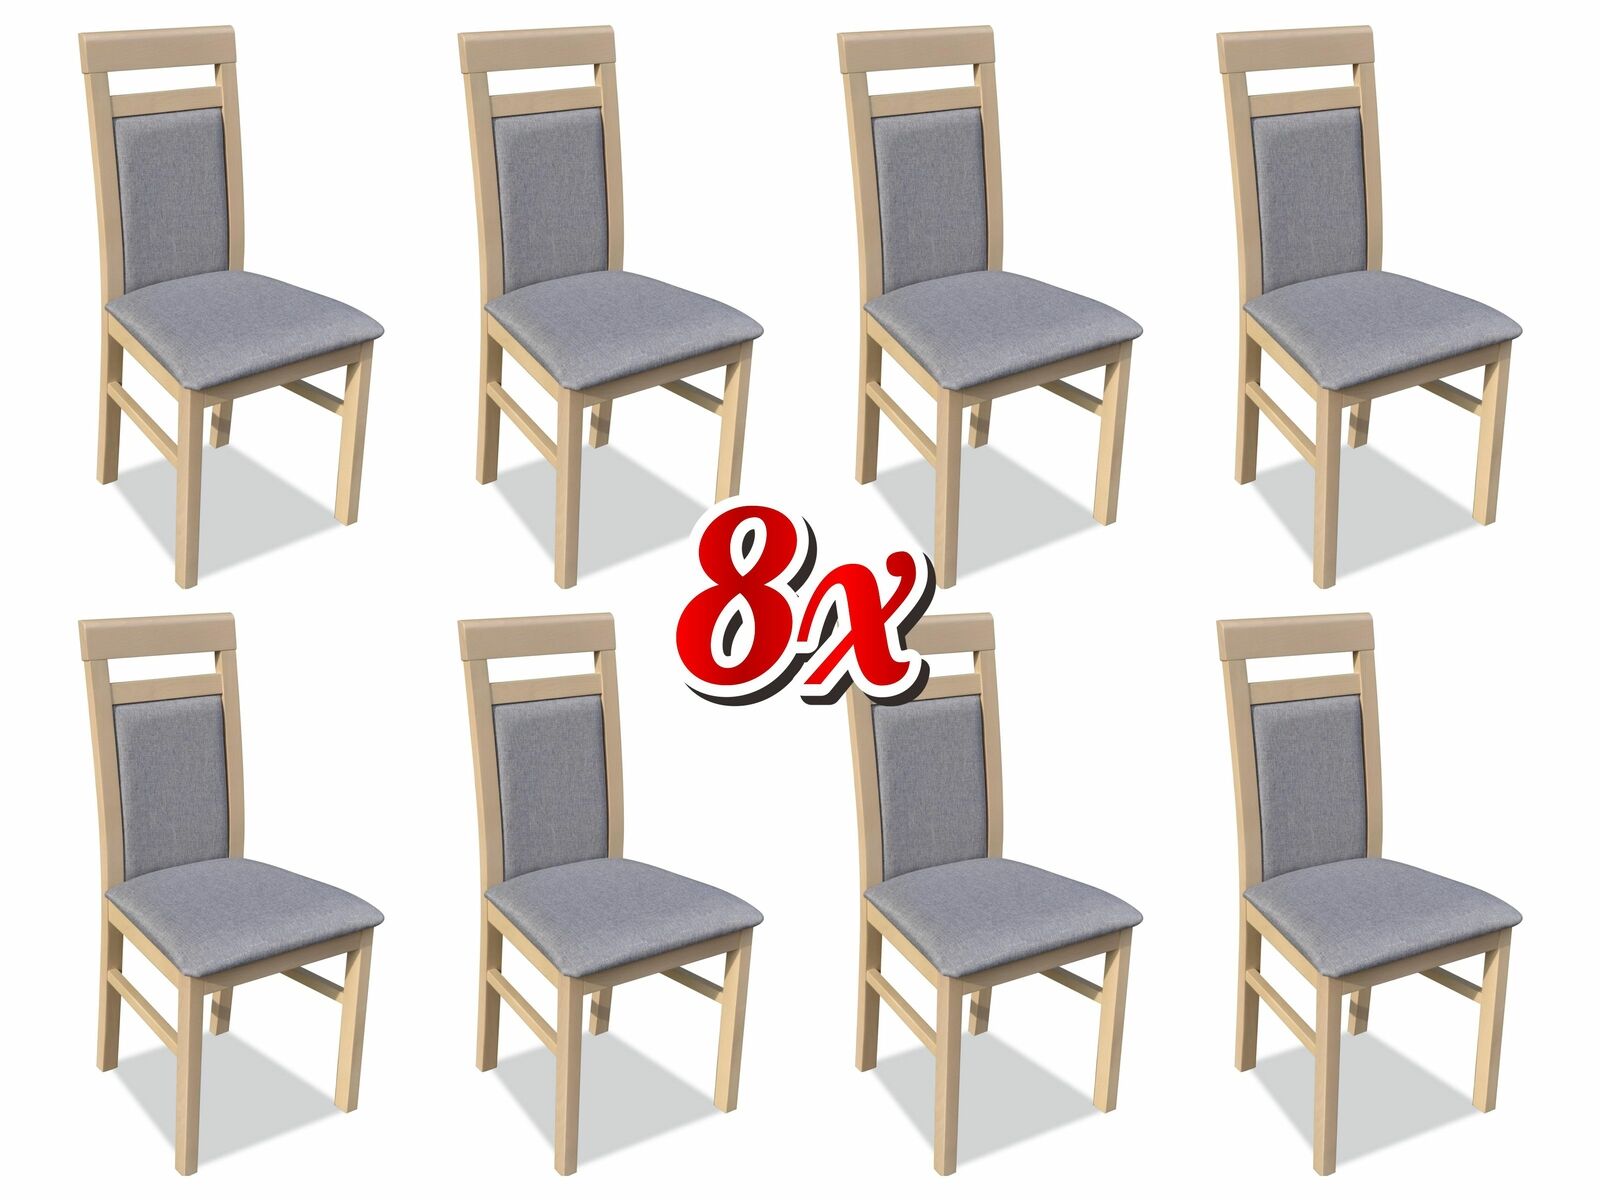 Garnitur Sessel Luxus Neu 8x Stühle Stuhl Polster Design Lounge Ess Sitz Gruppe